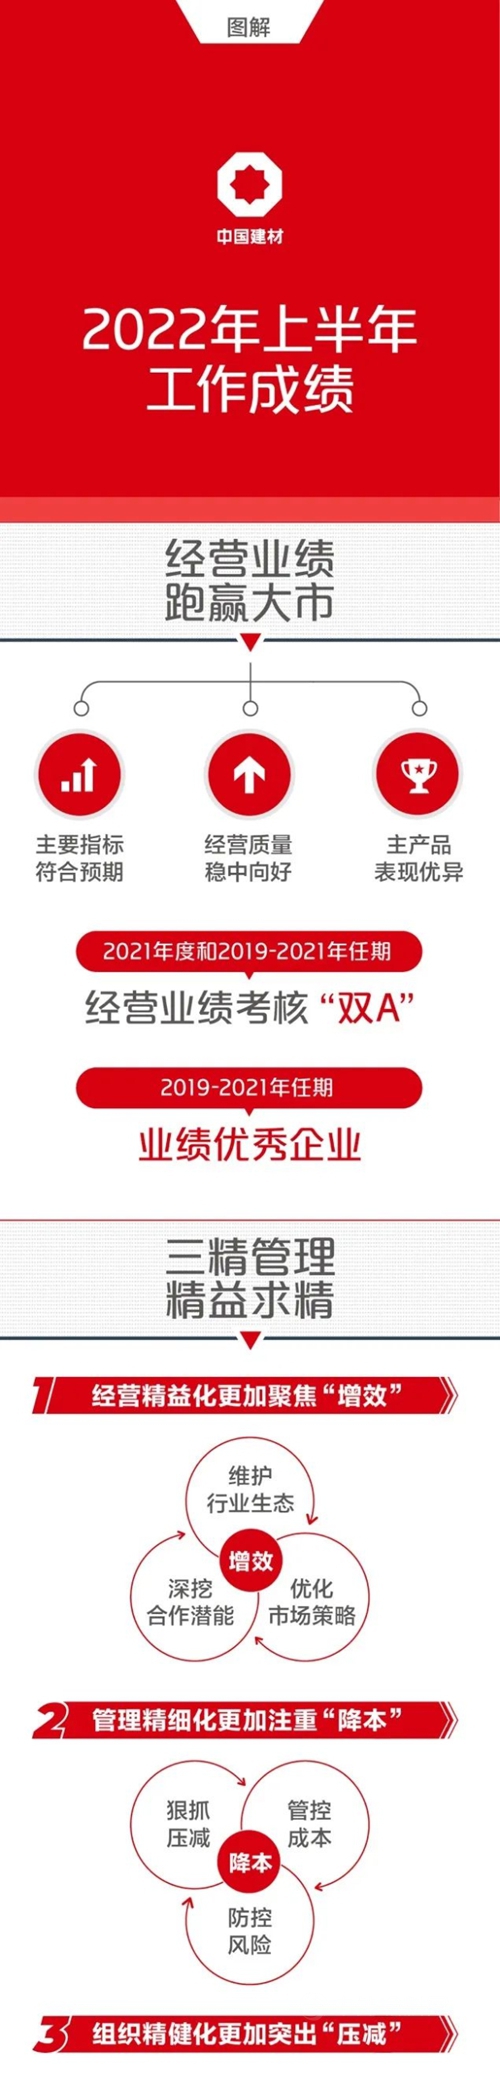 一图解码中国建材集团2022年半年工作会议